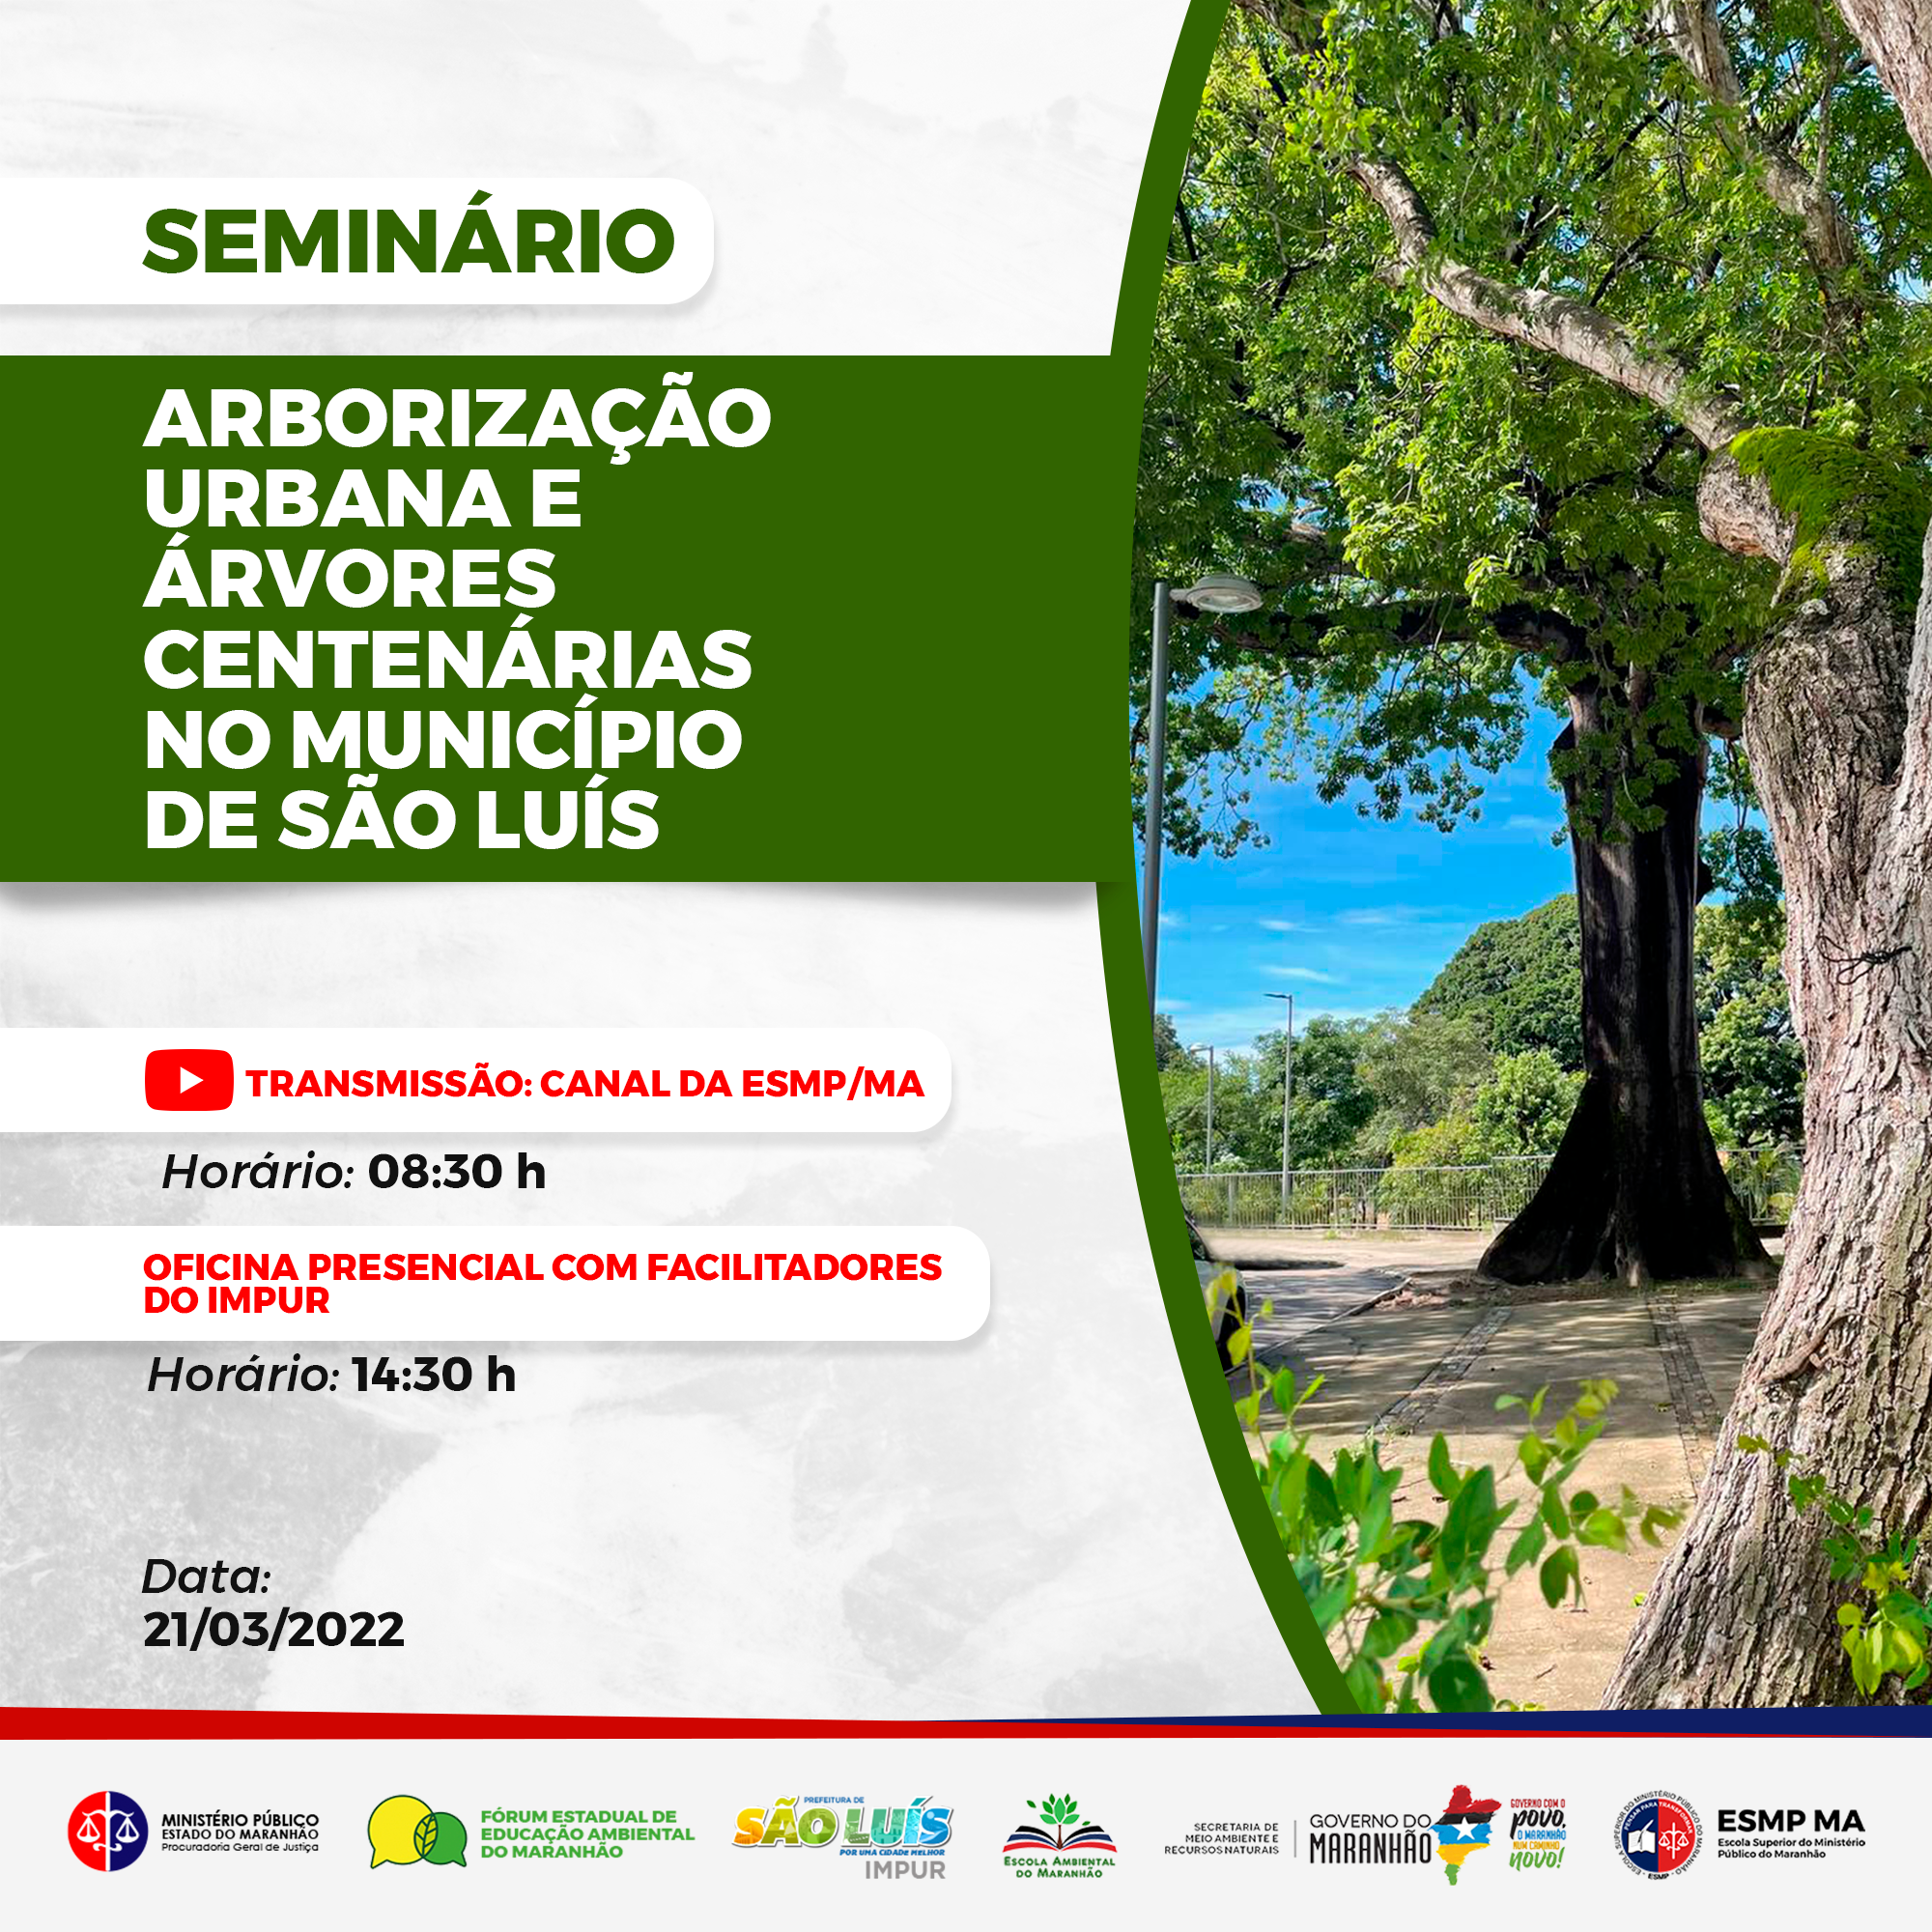 Seminário "Arborização Urbana e Árvores Centenárias no Município de São Luís